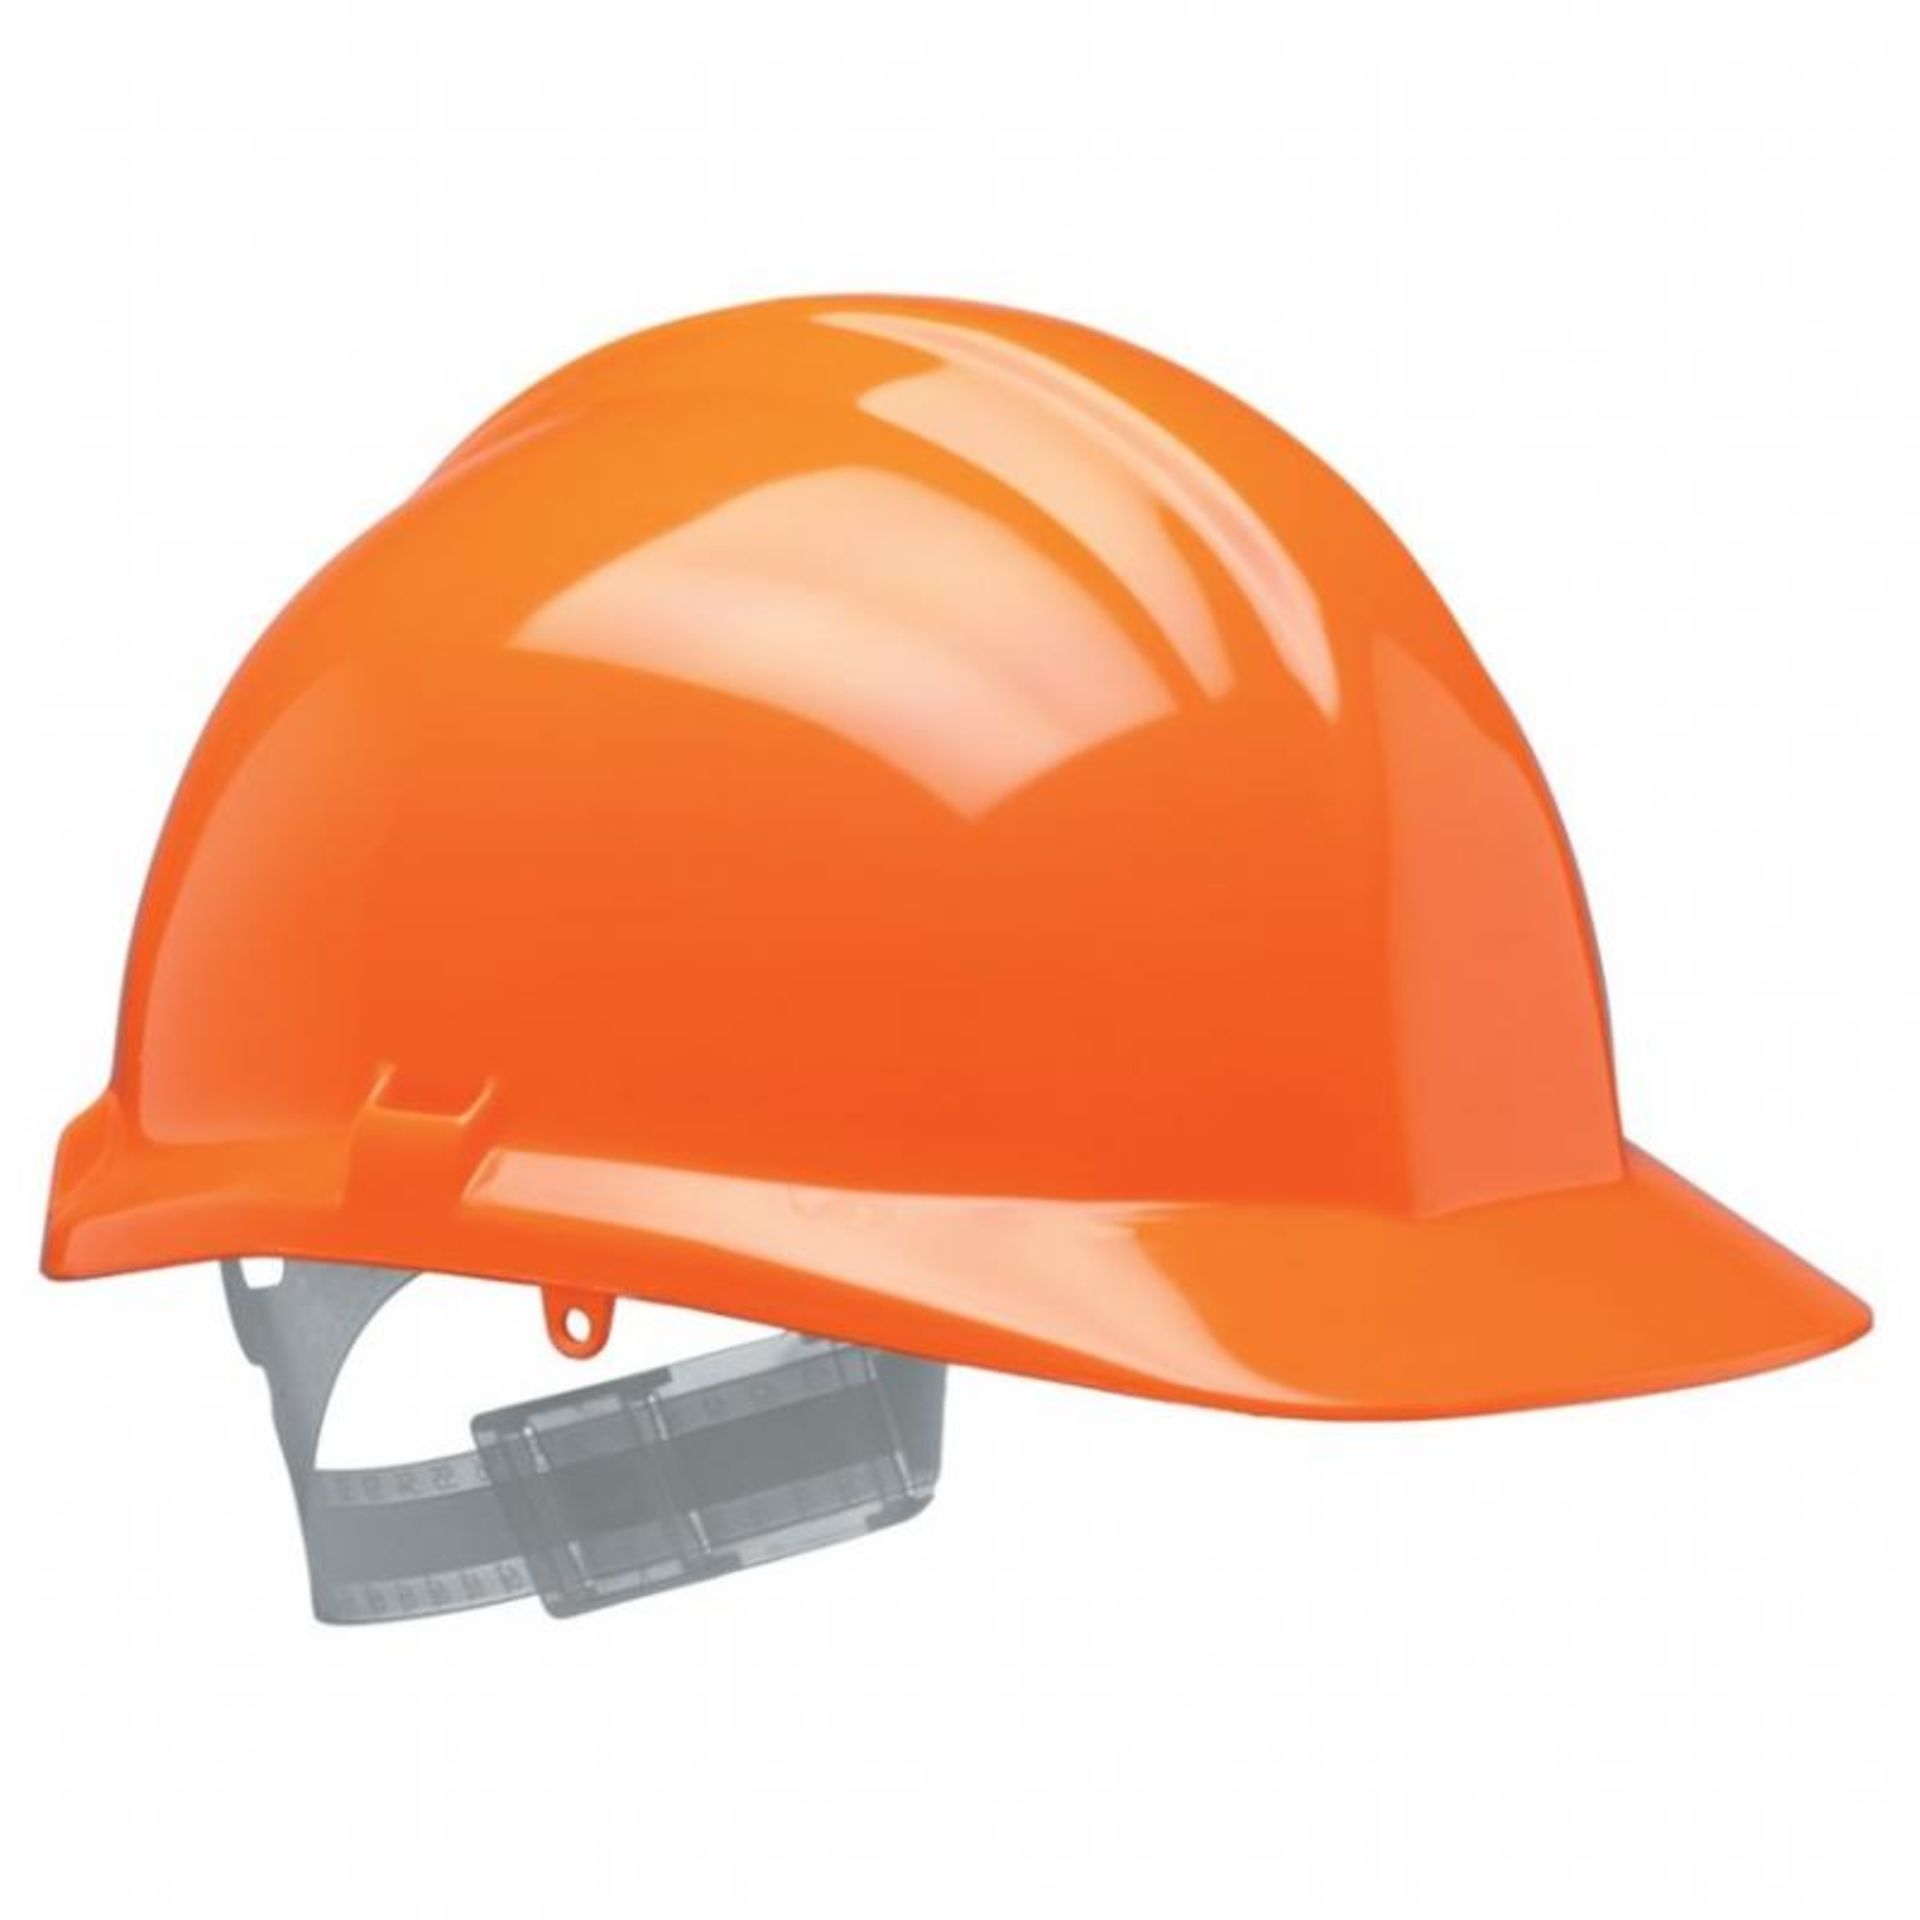 13 x Centurion 1125 Safety Helmet - Reduced Peak - Orange - CL185 - Ref: CEN/S17/ORG/P14 - New Stock